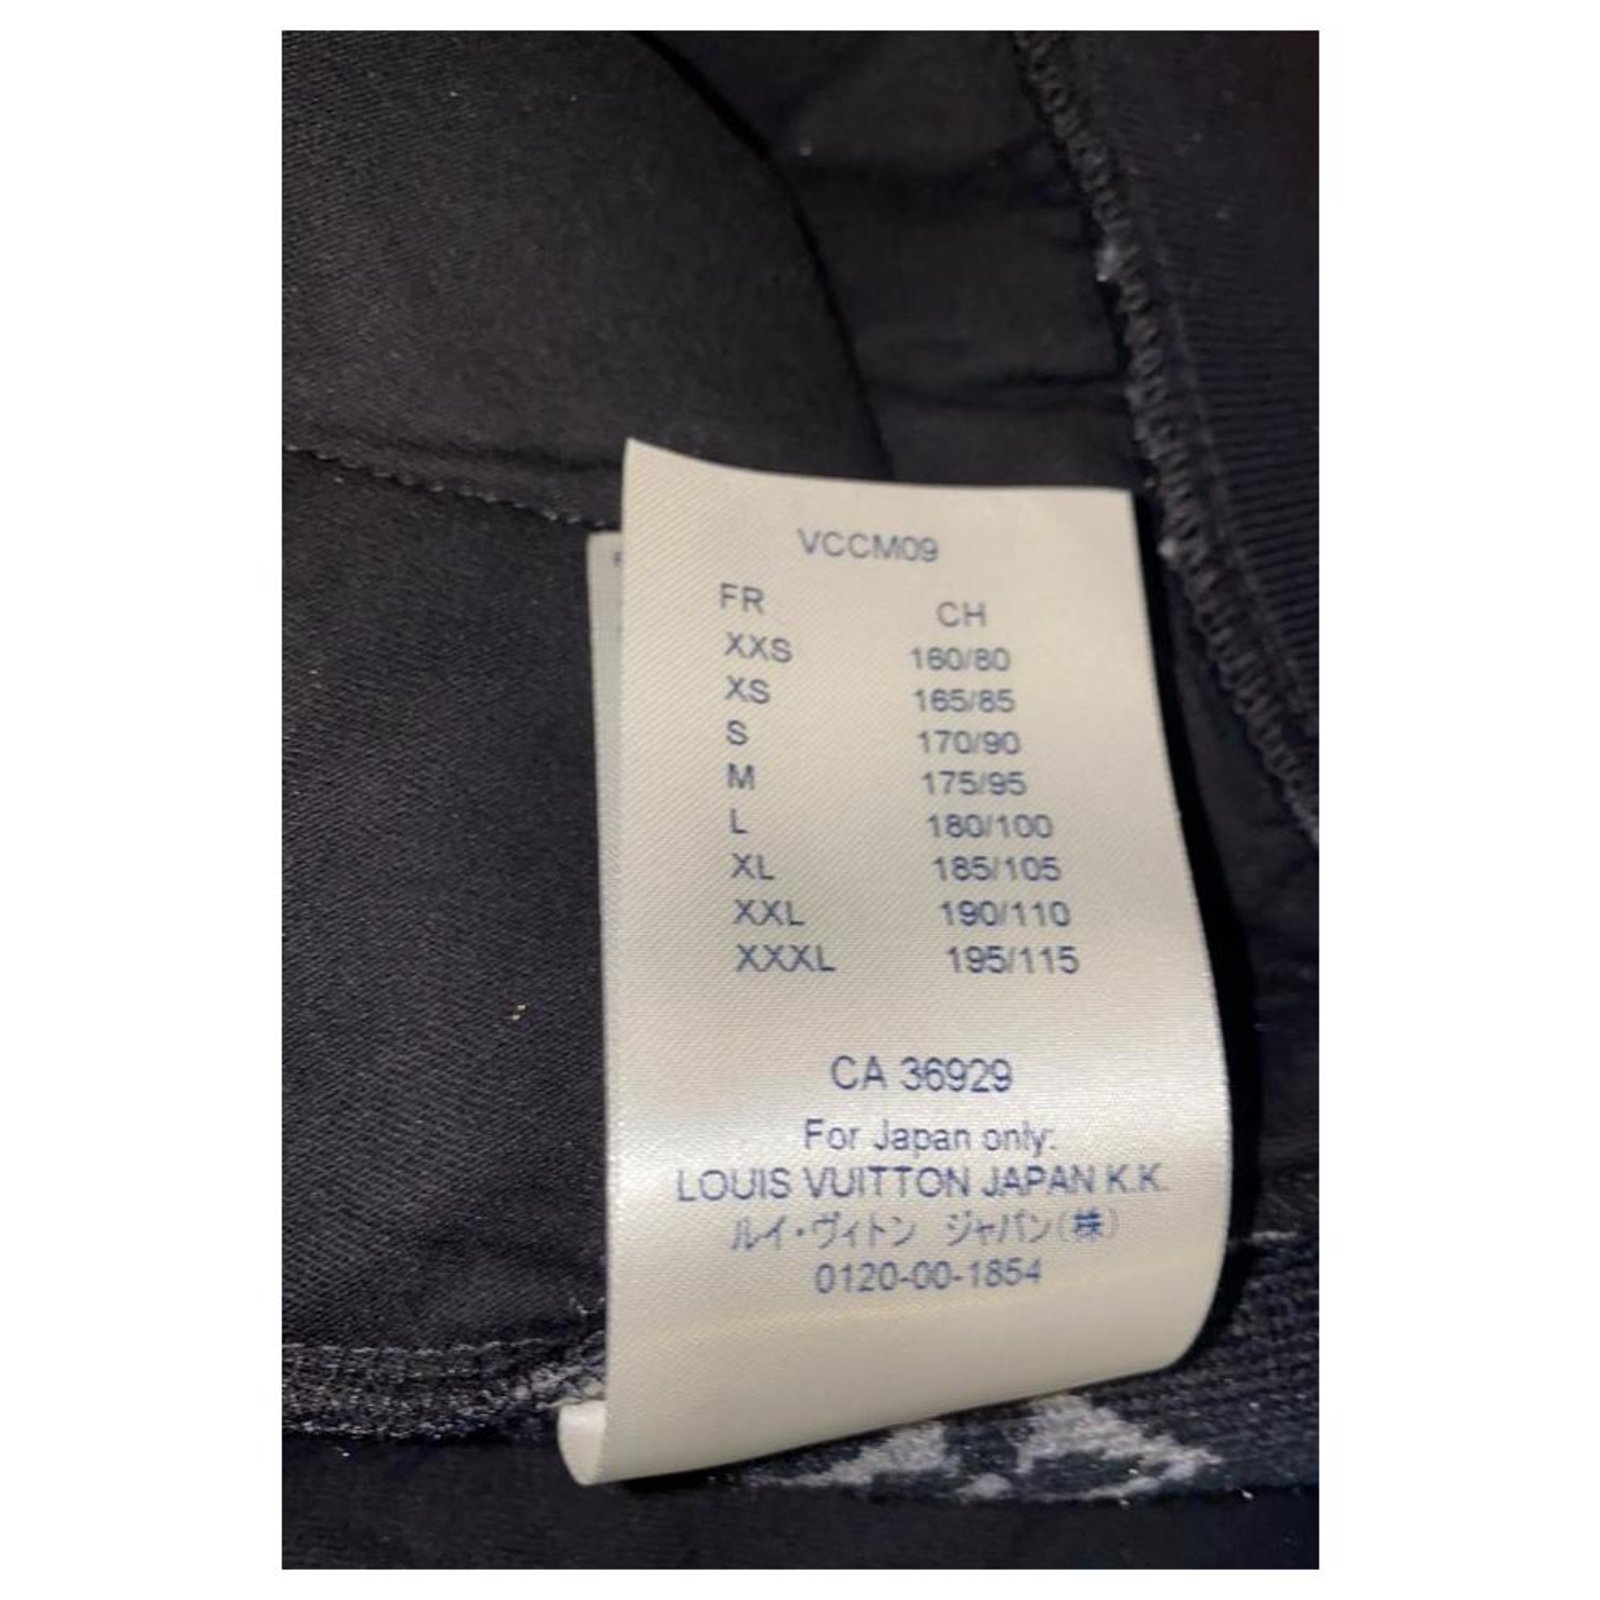 LOUIS VUITTON, Mens Monogram Jacquard Fleece Zip Through Nuit Navy, Blue,  (Size 16 (XL / Plus 0X), New, …